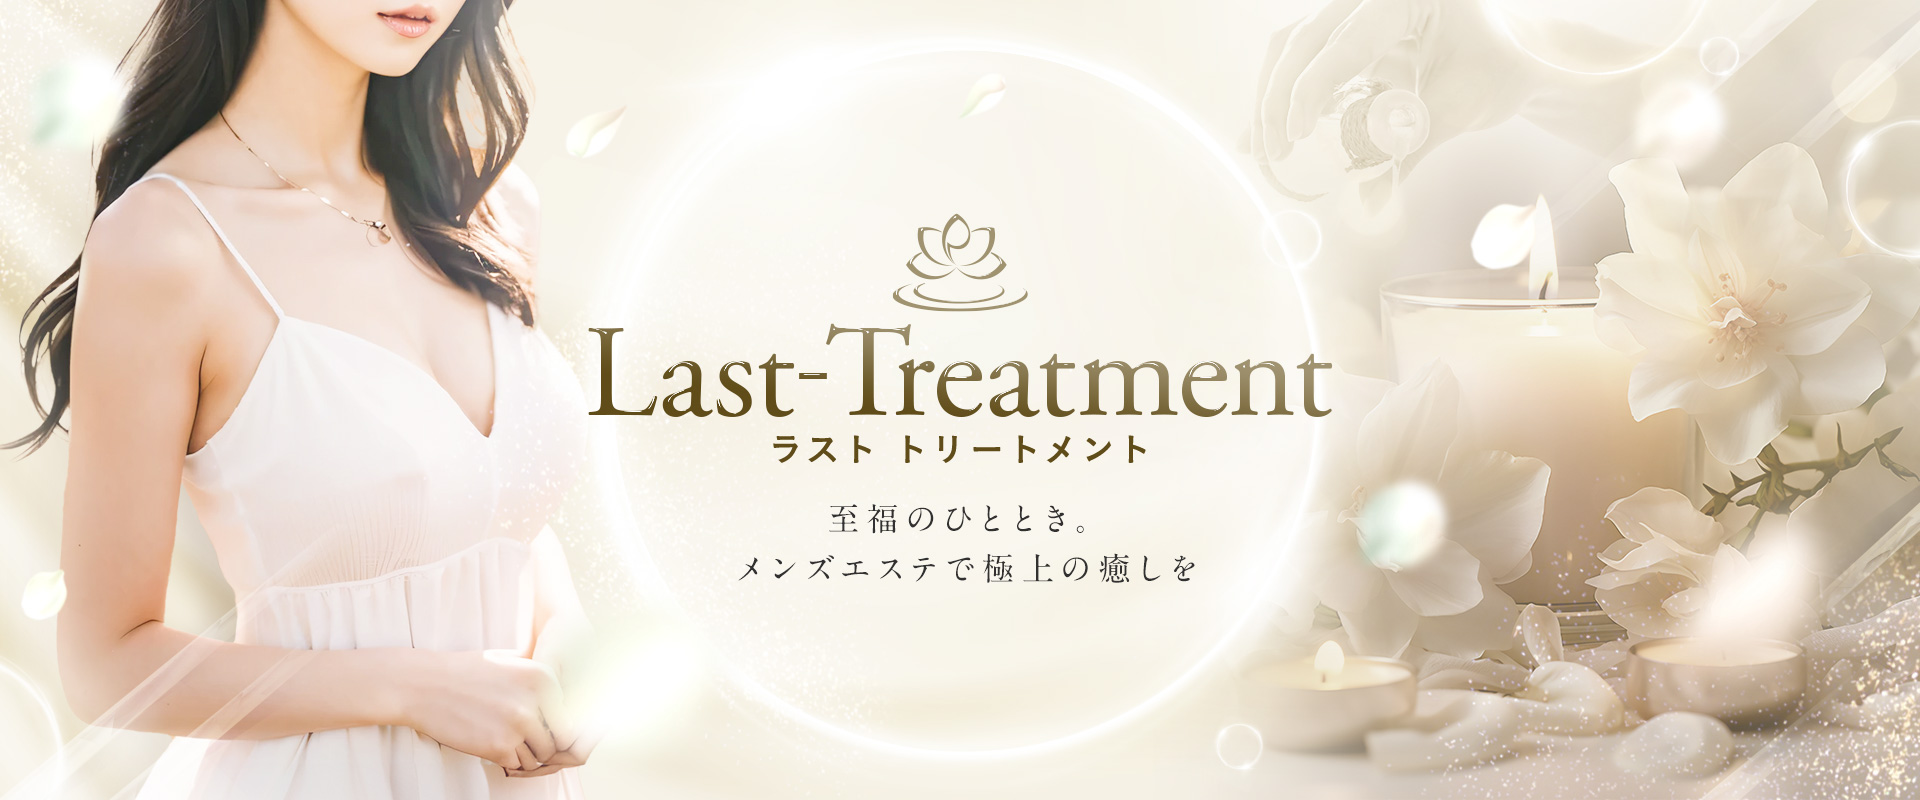 last treatment-ラスト トリートメント-